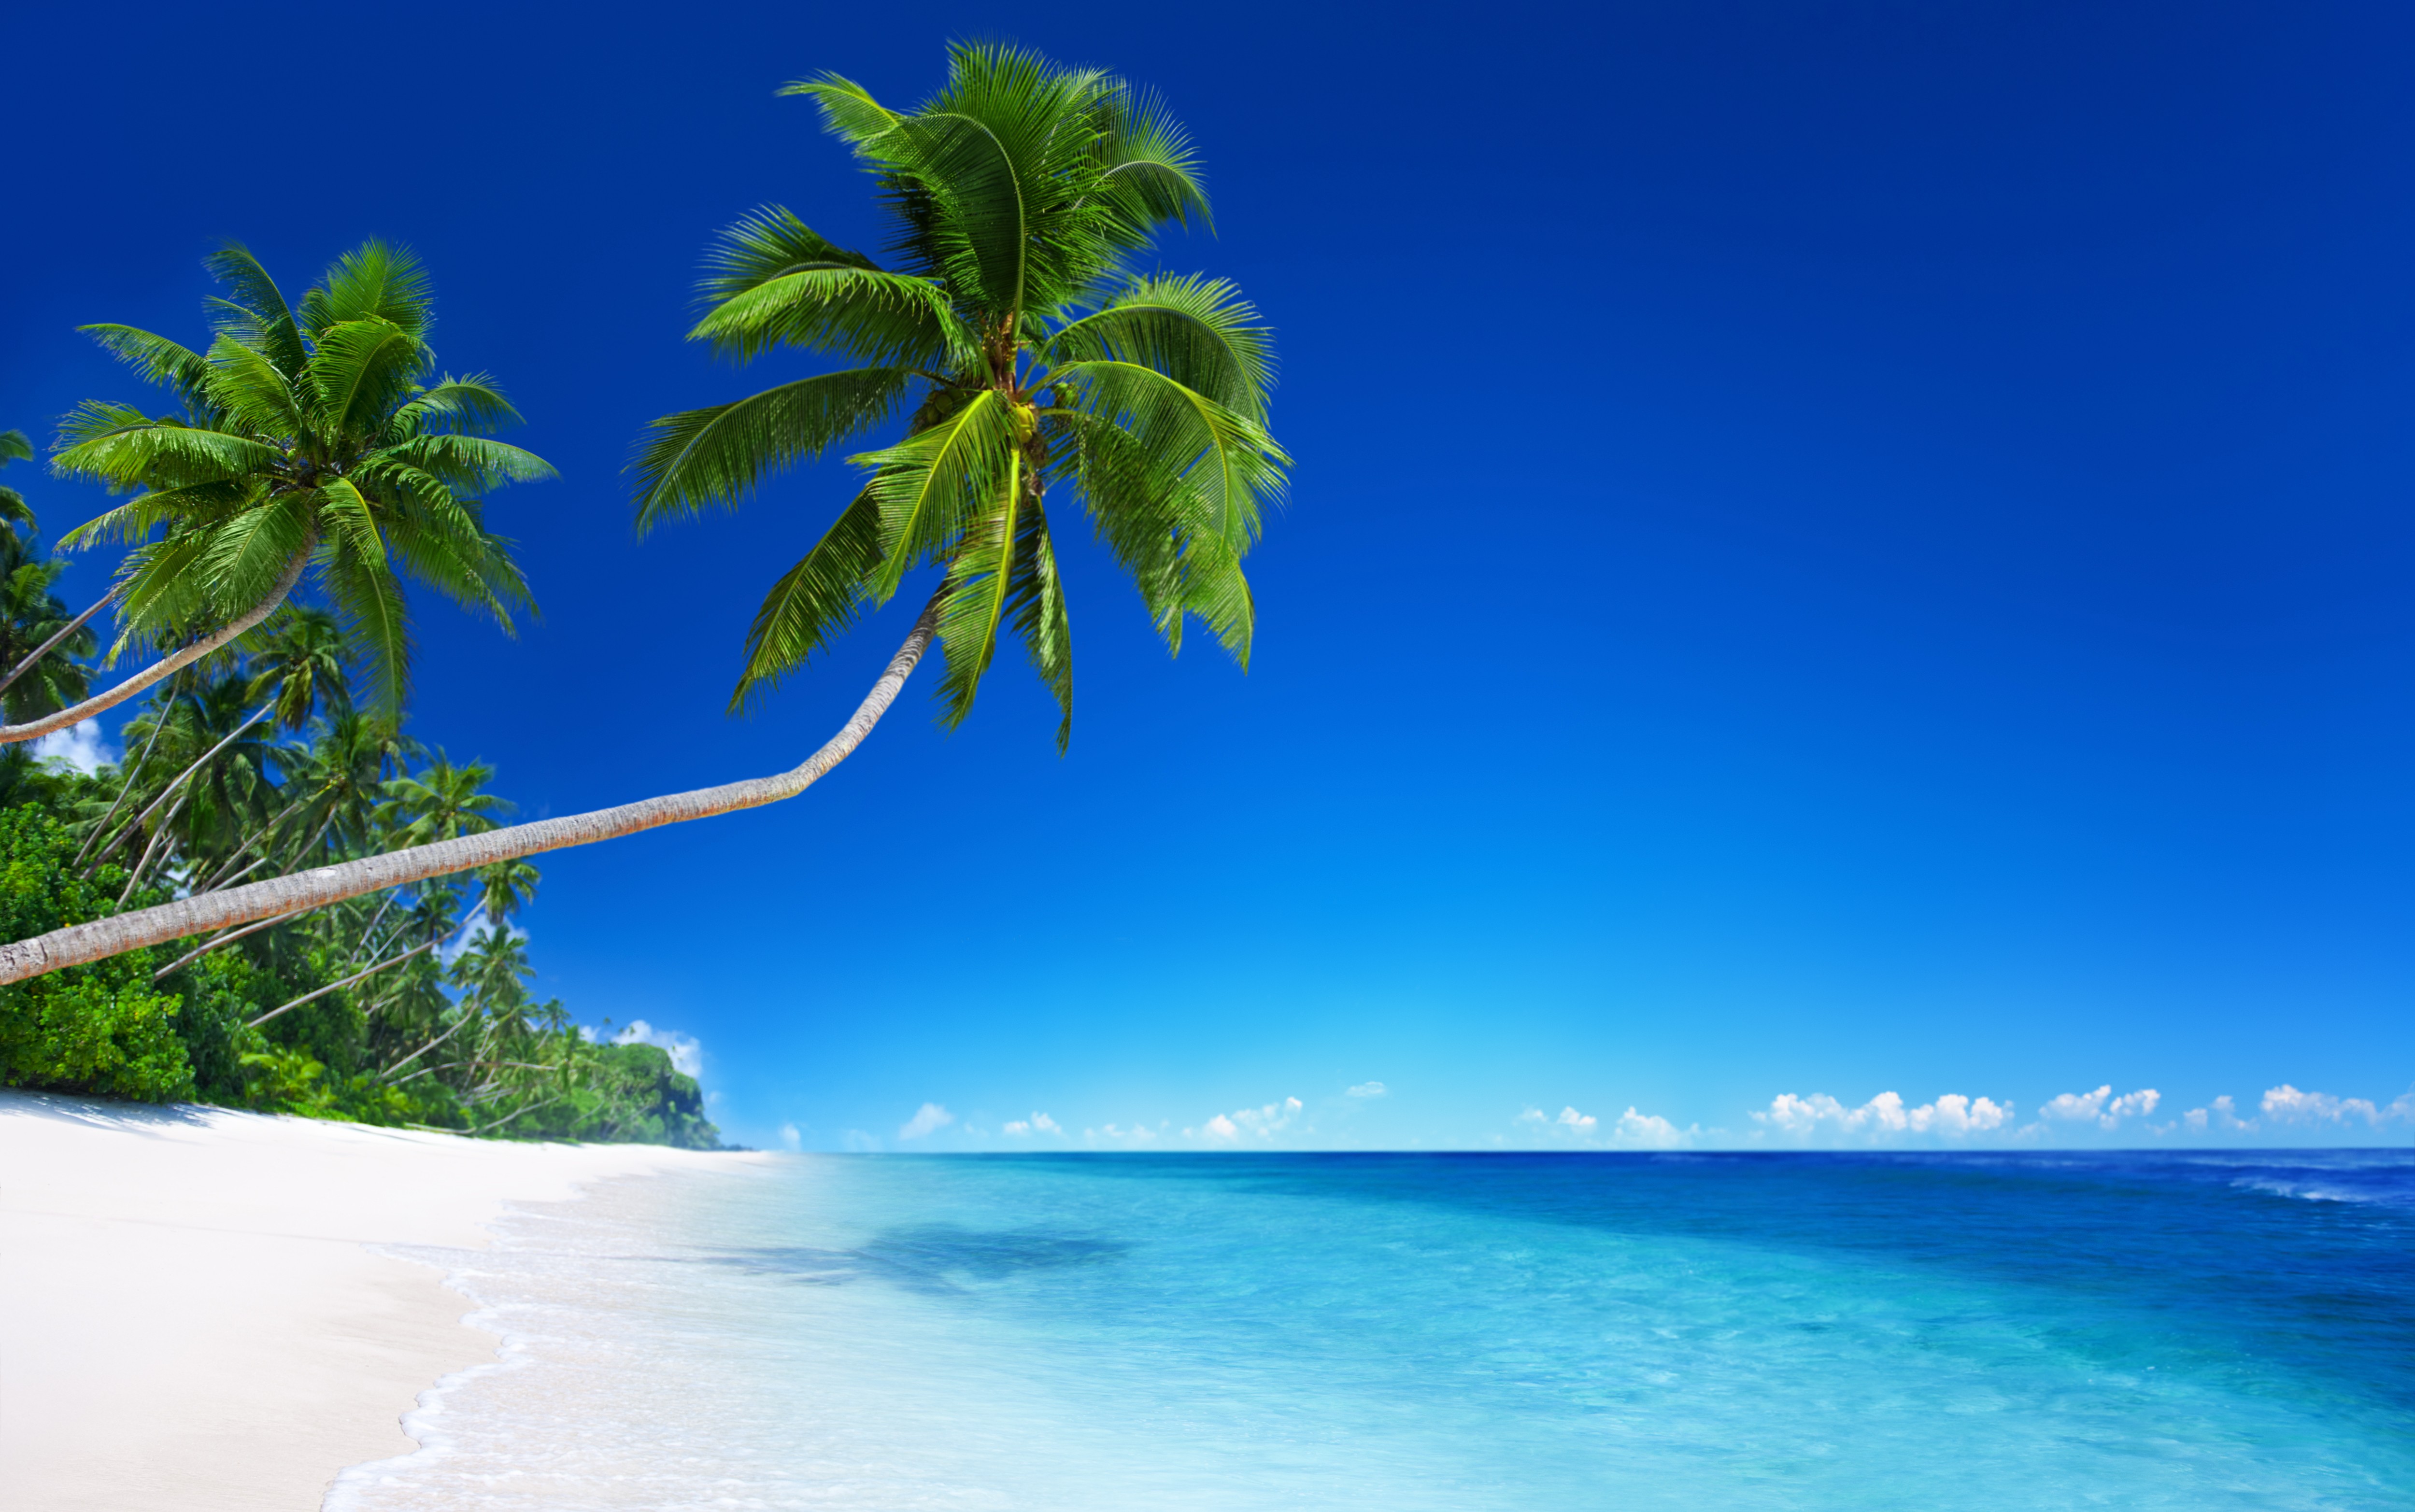 Скачать обои бесплатно Пляж, Горизонт, Океан, Пальма, Тропический, Земля/природа картинка на рабочий стол ПК